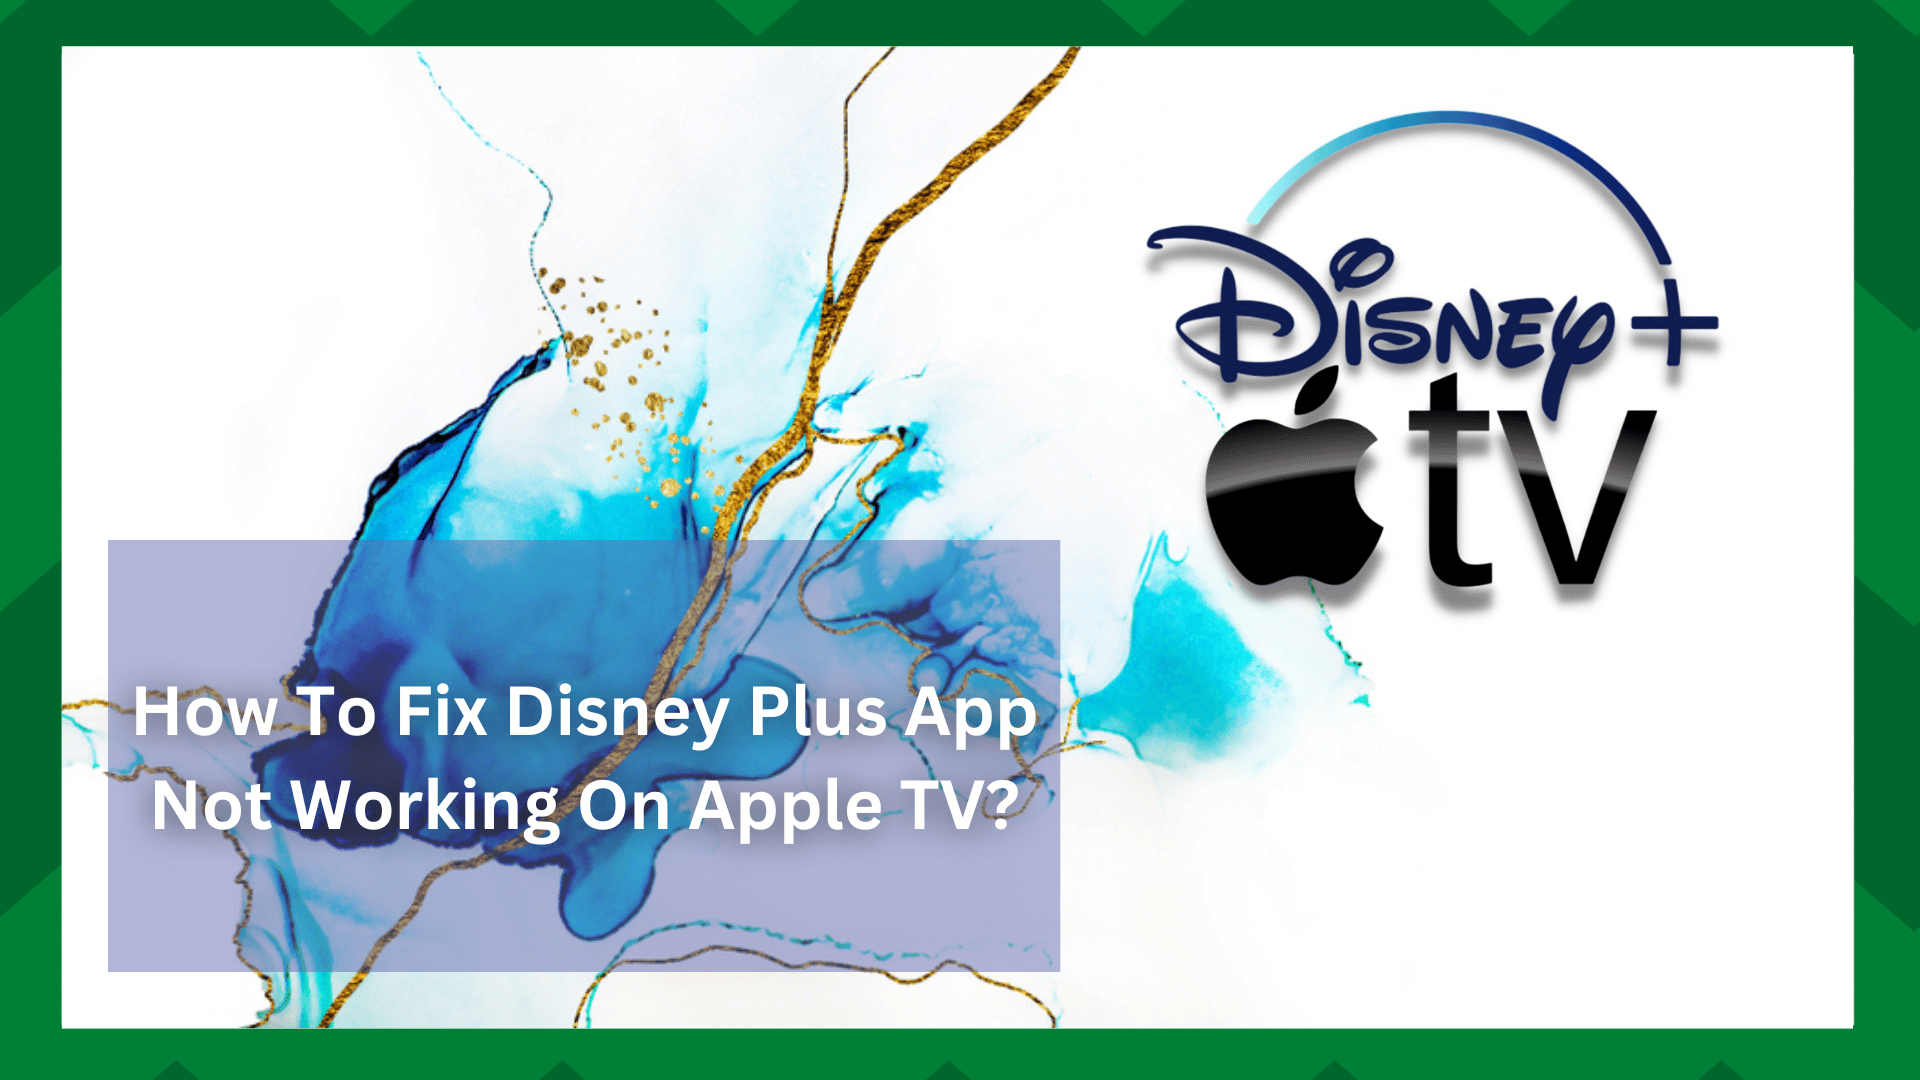 4 giải pháp khả thi cho ứng dụng Disney Plus không hoạt động trên Apple TV